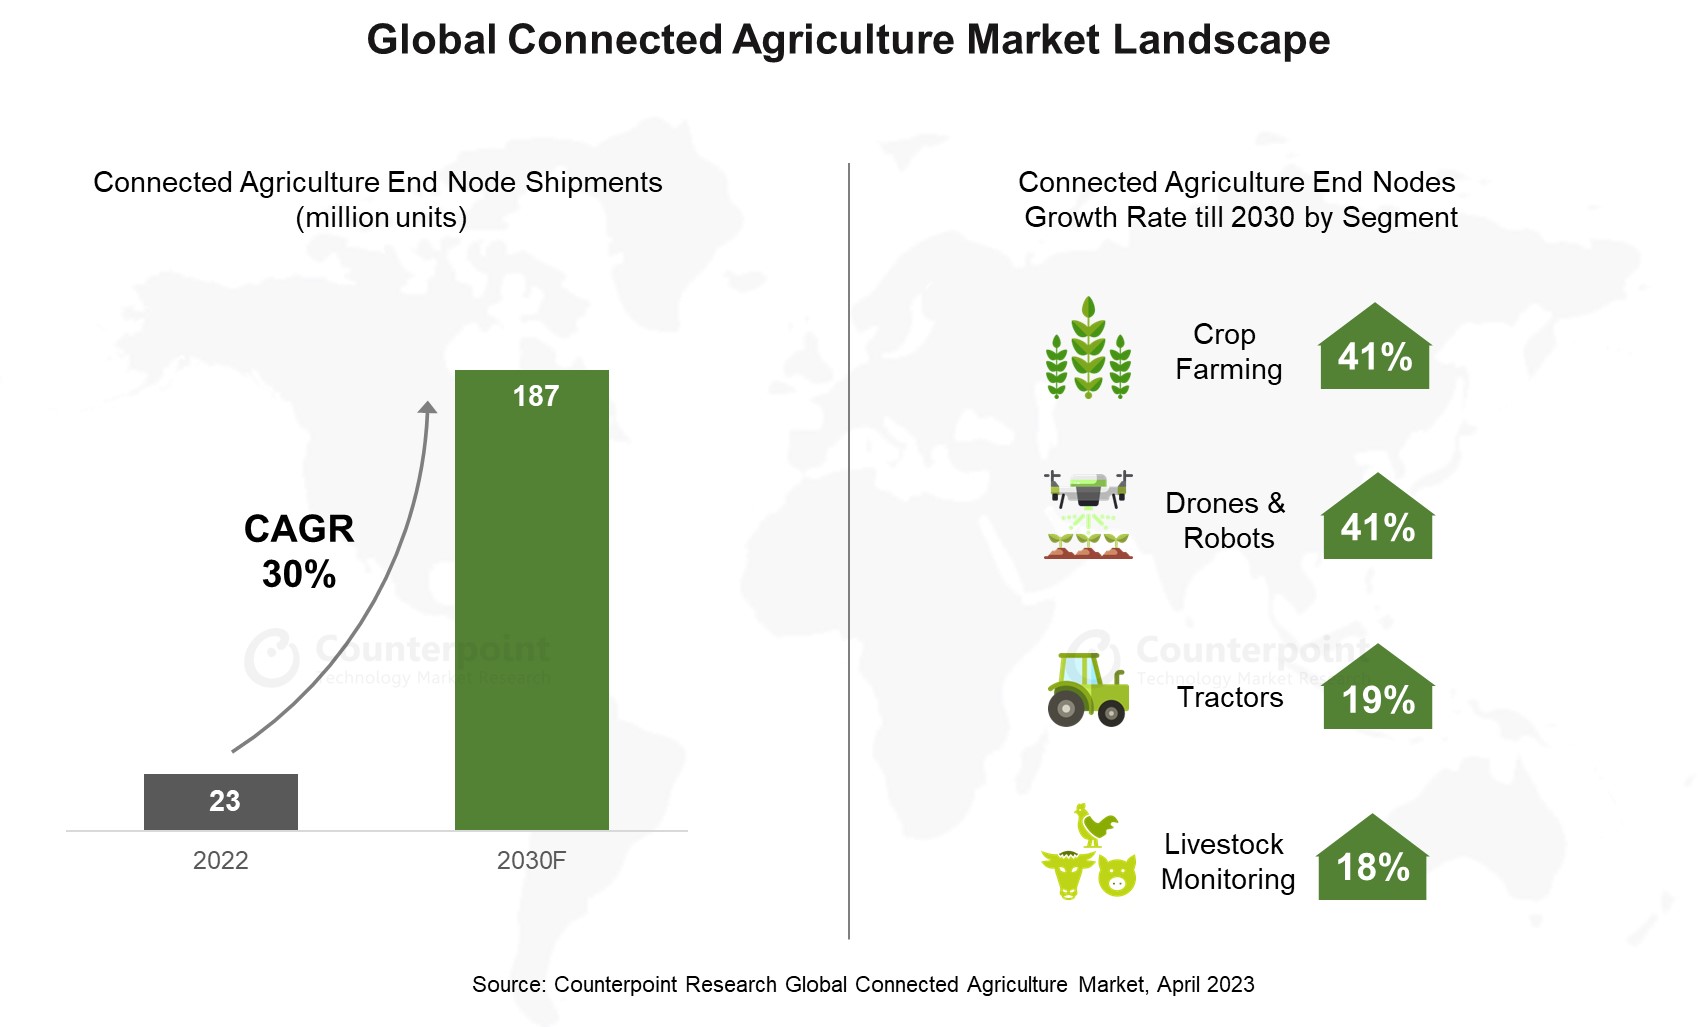 Global Connected Agriculture market landscape